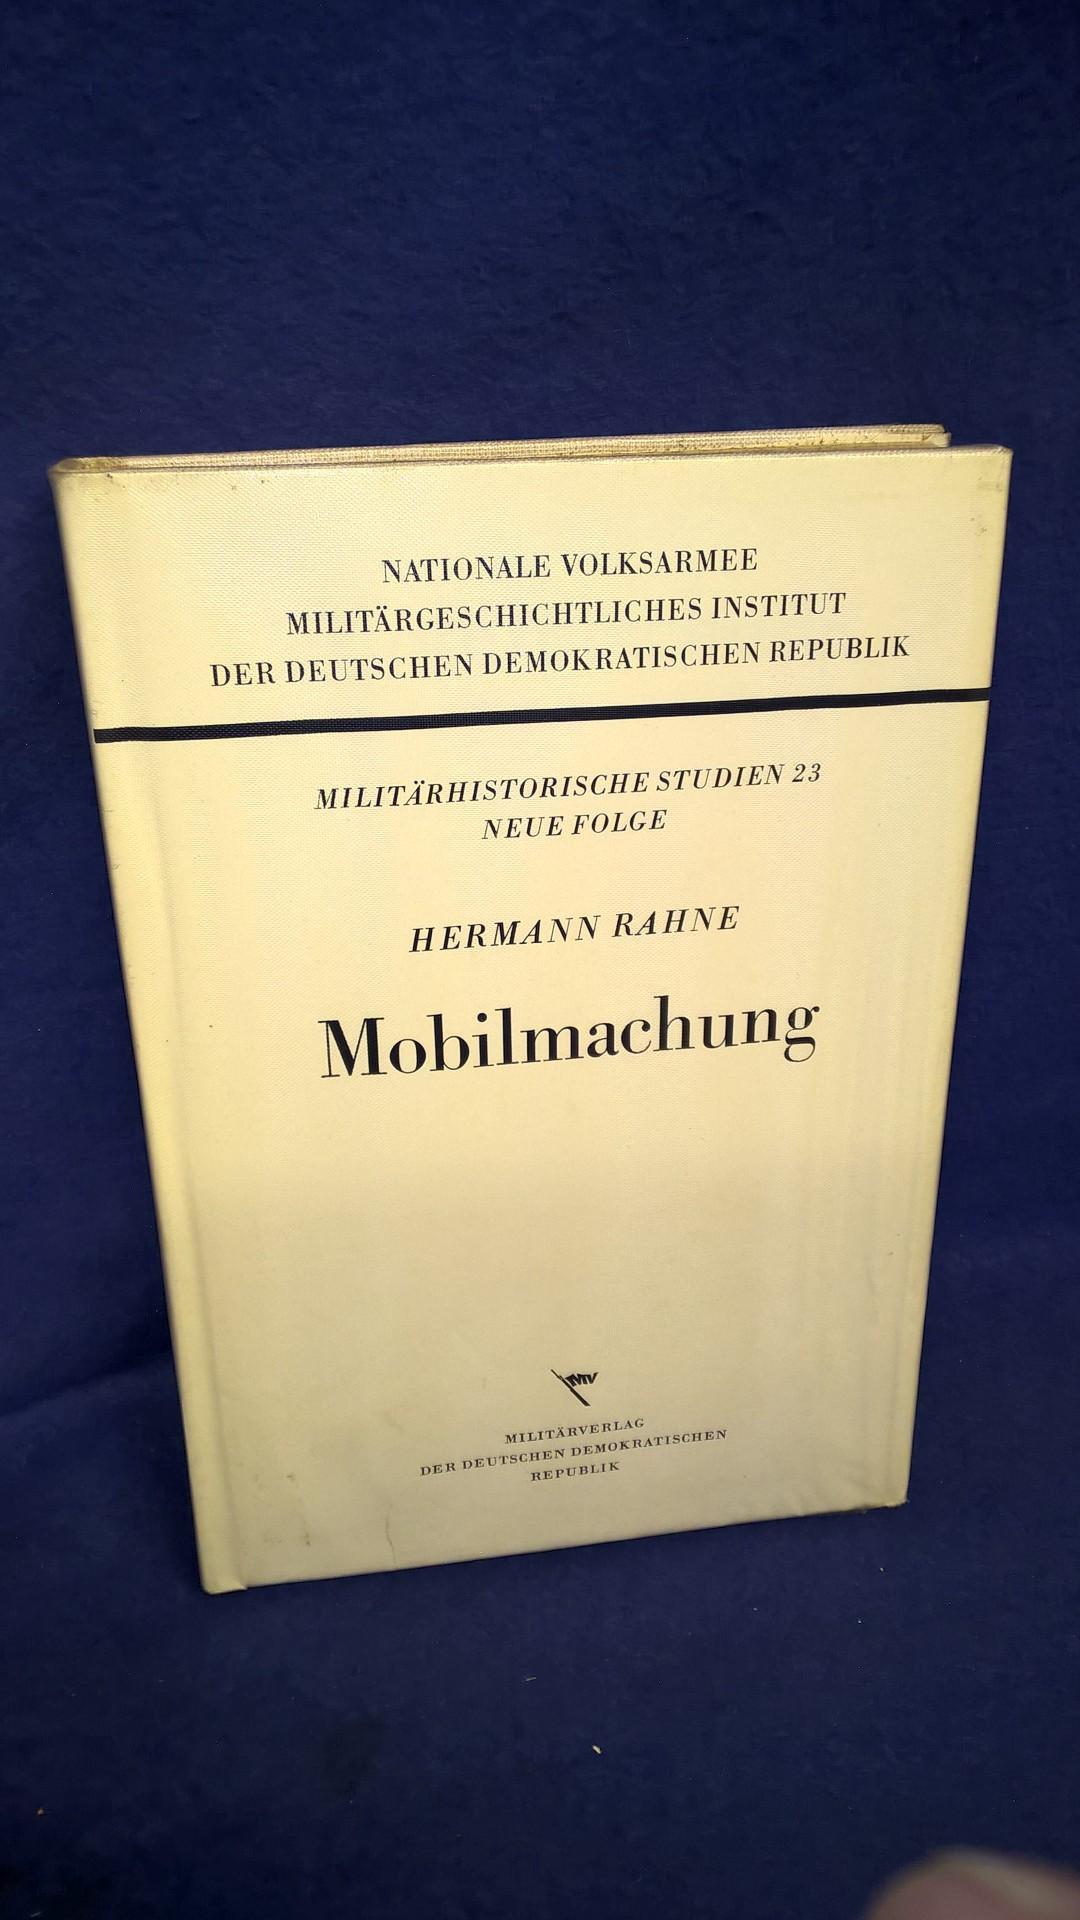 Mobilmachung. Militärische Mobilmachungsplanung und -technik in Preußen und im Deutschen Reich von Mitte des 19. Jahrhunderts bis zum Zweiten Weltkrieg.